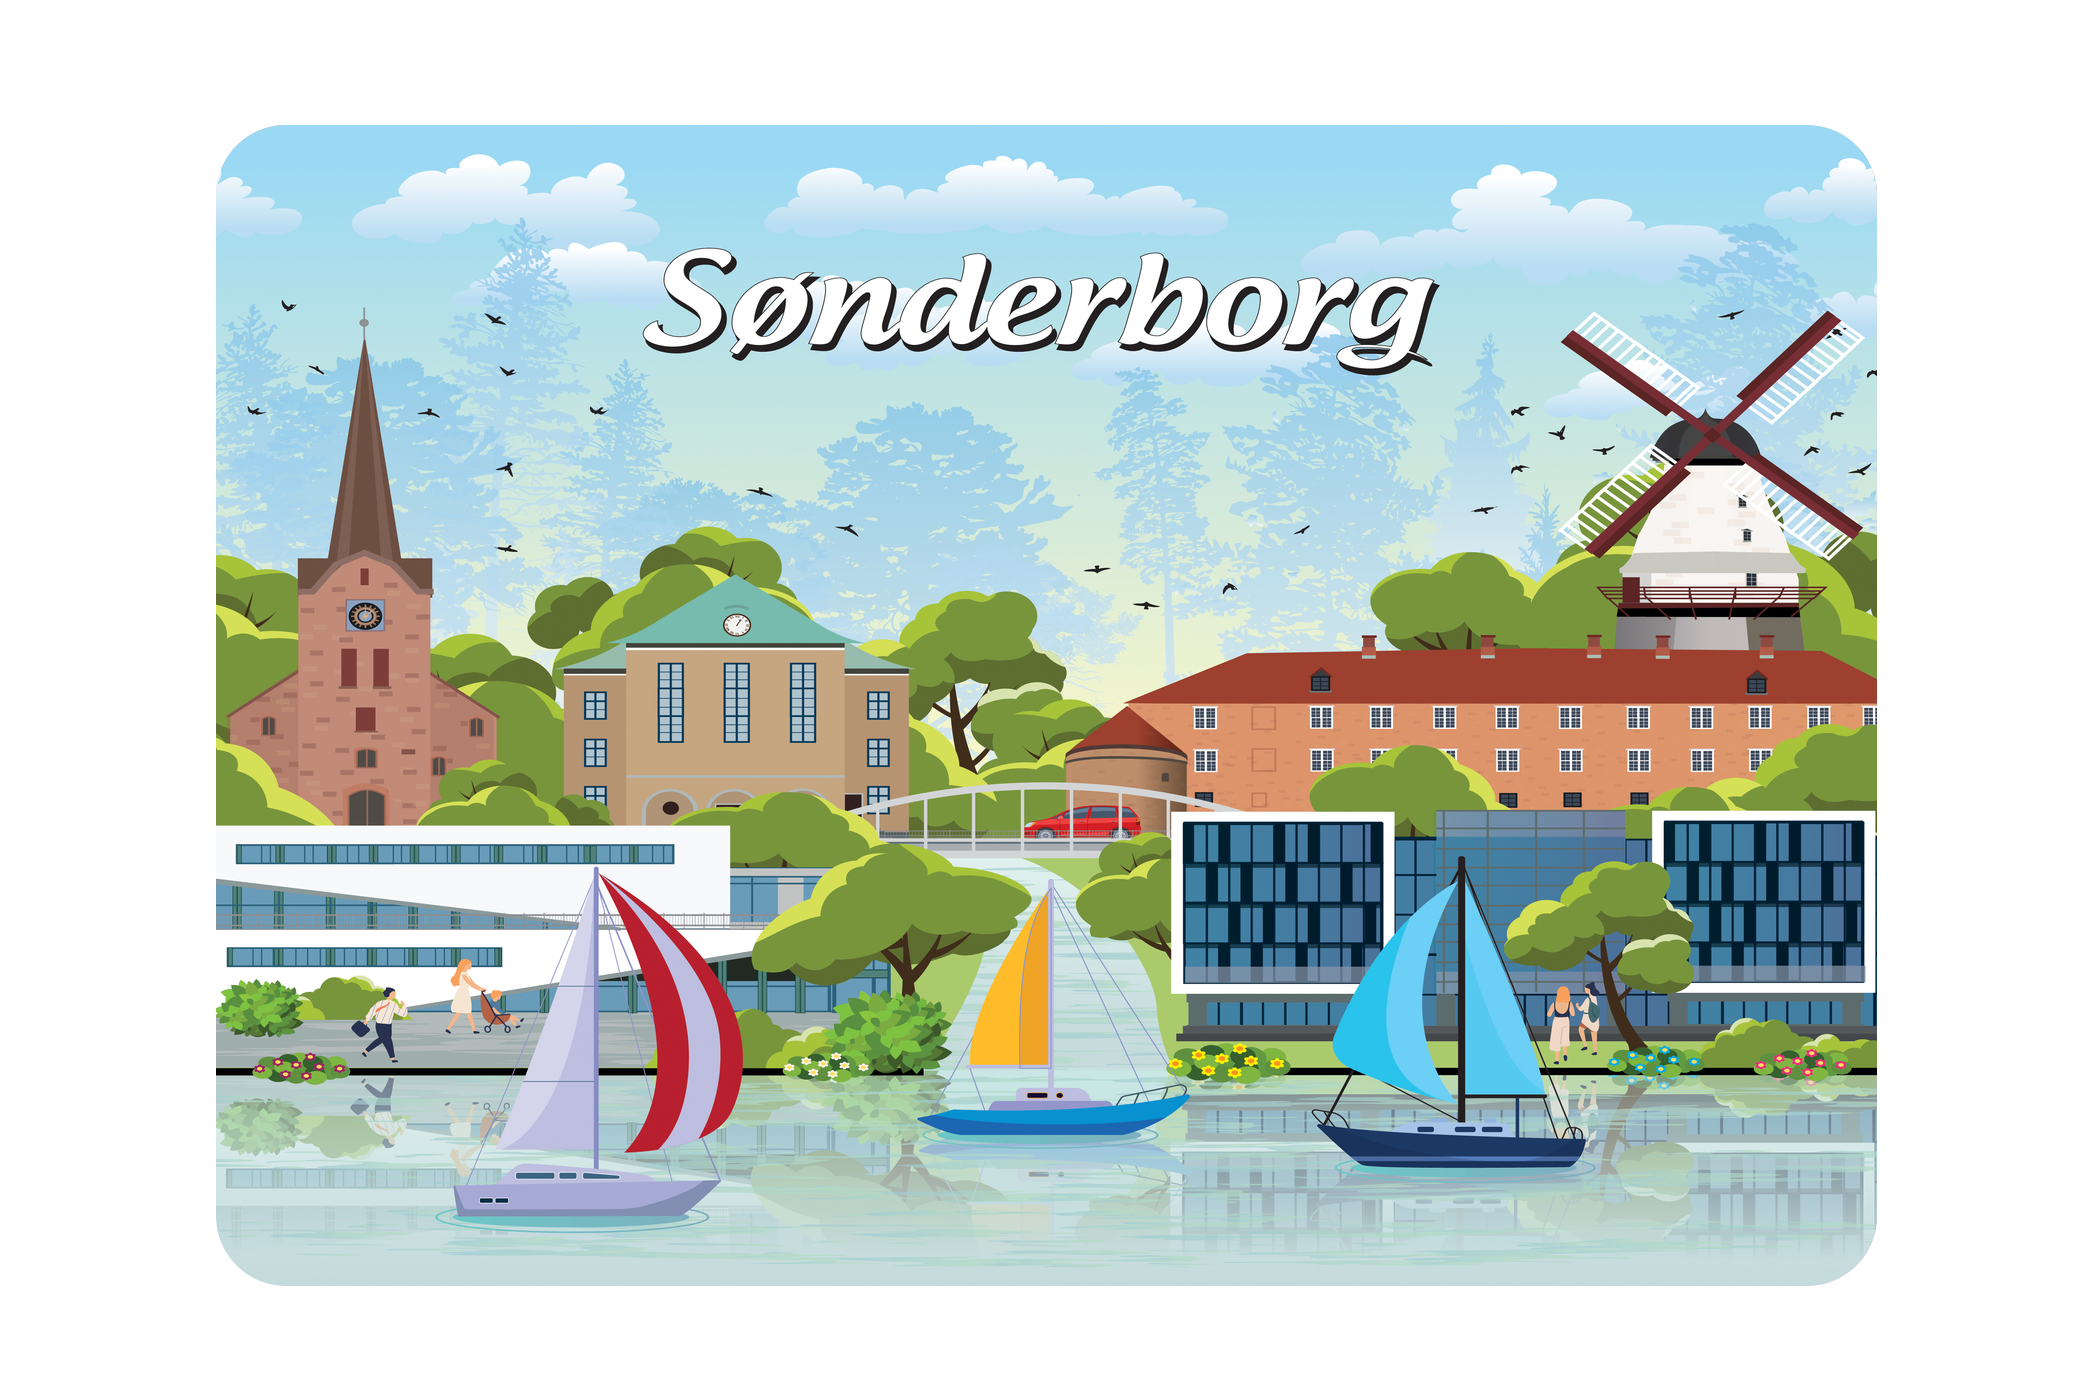 Sønderborg - Bykoncept